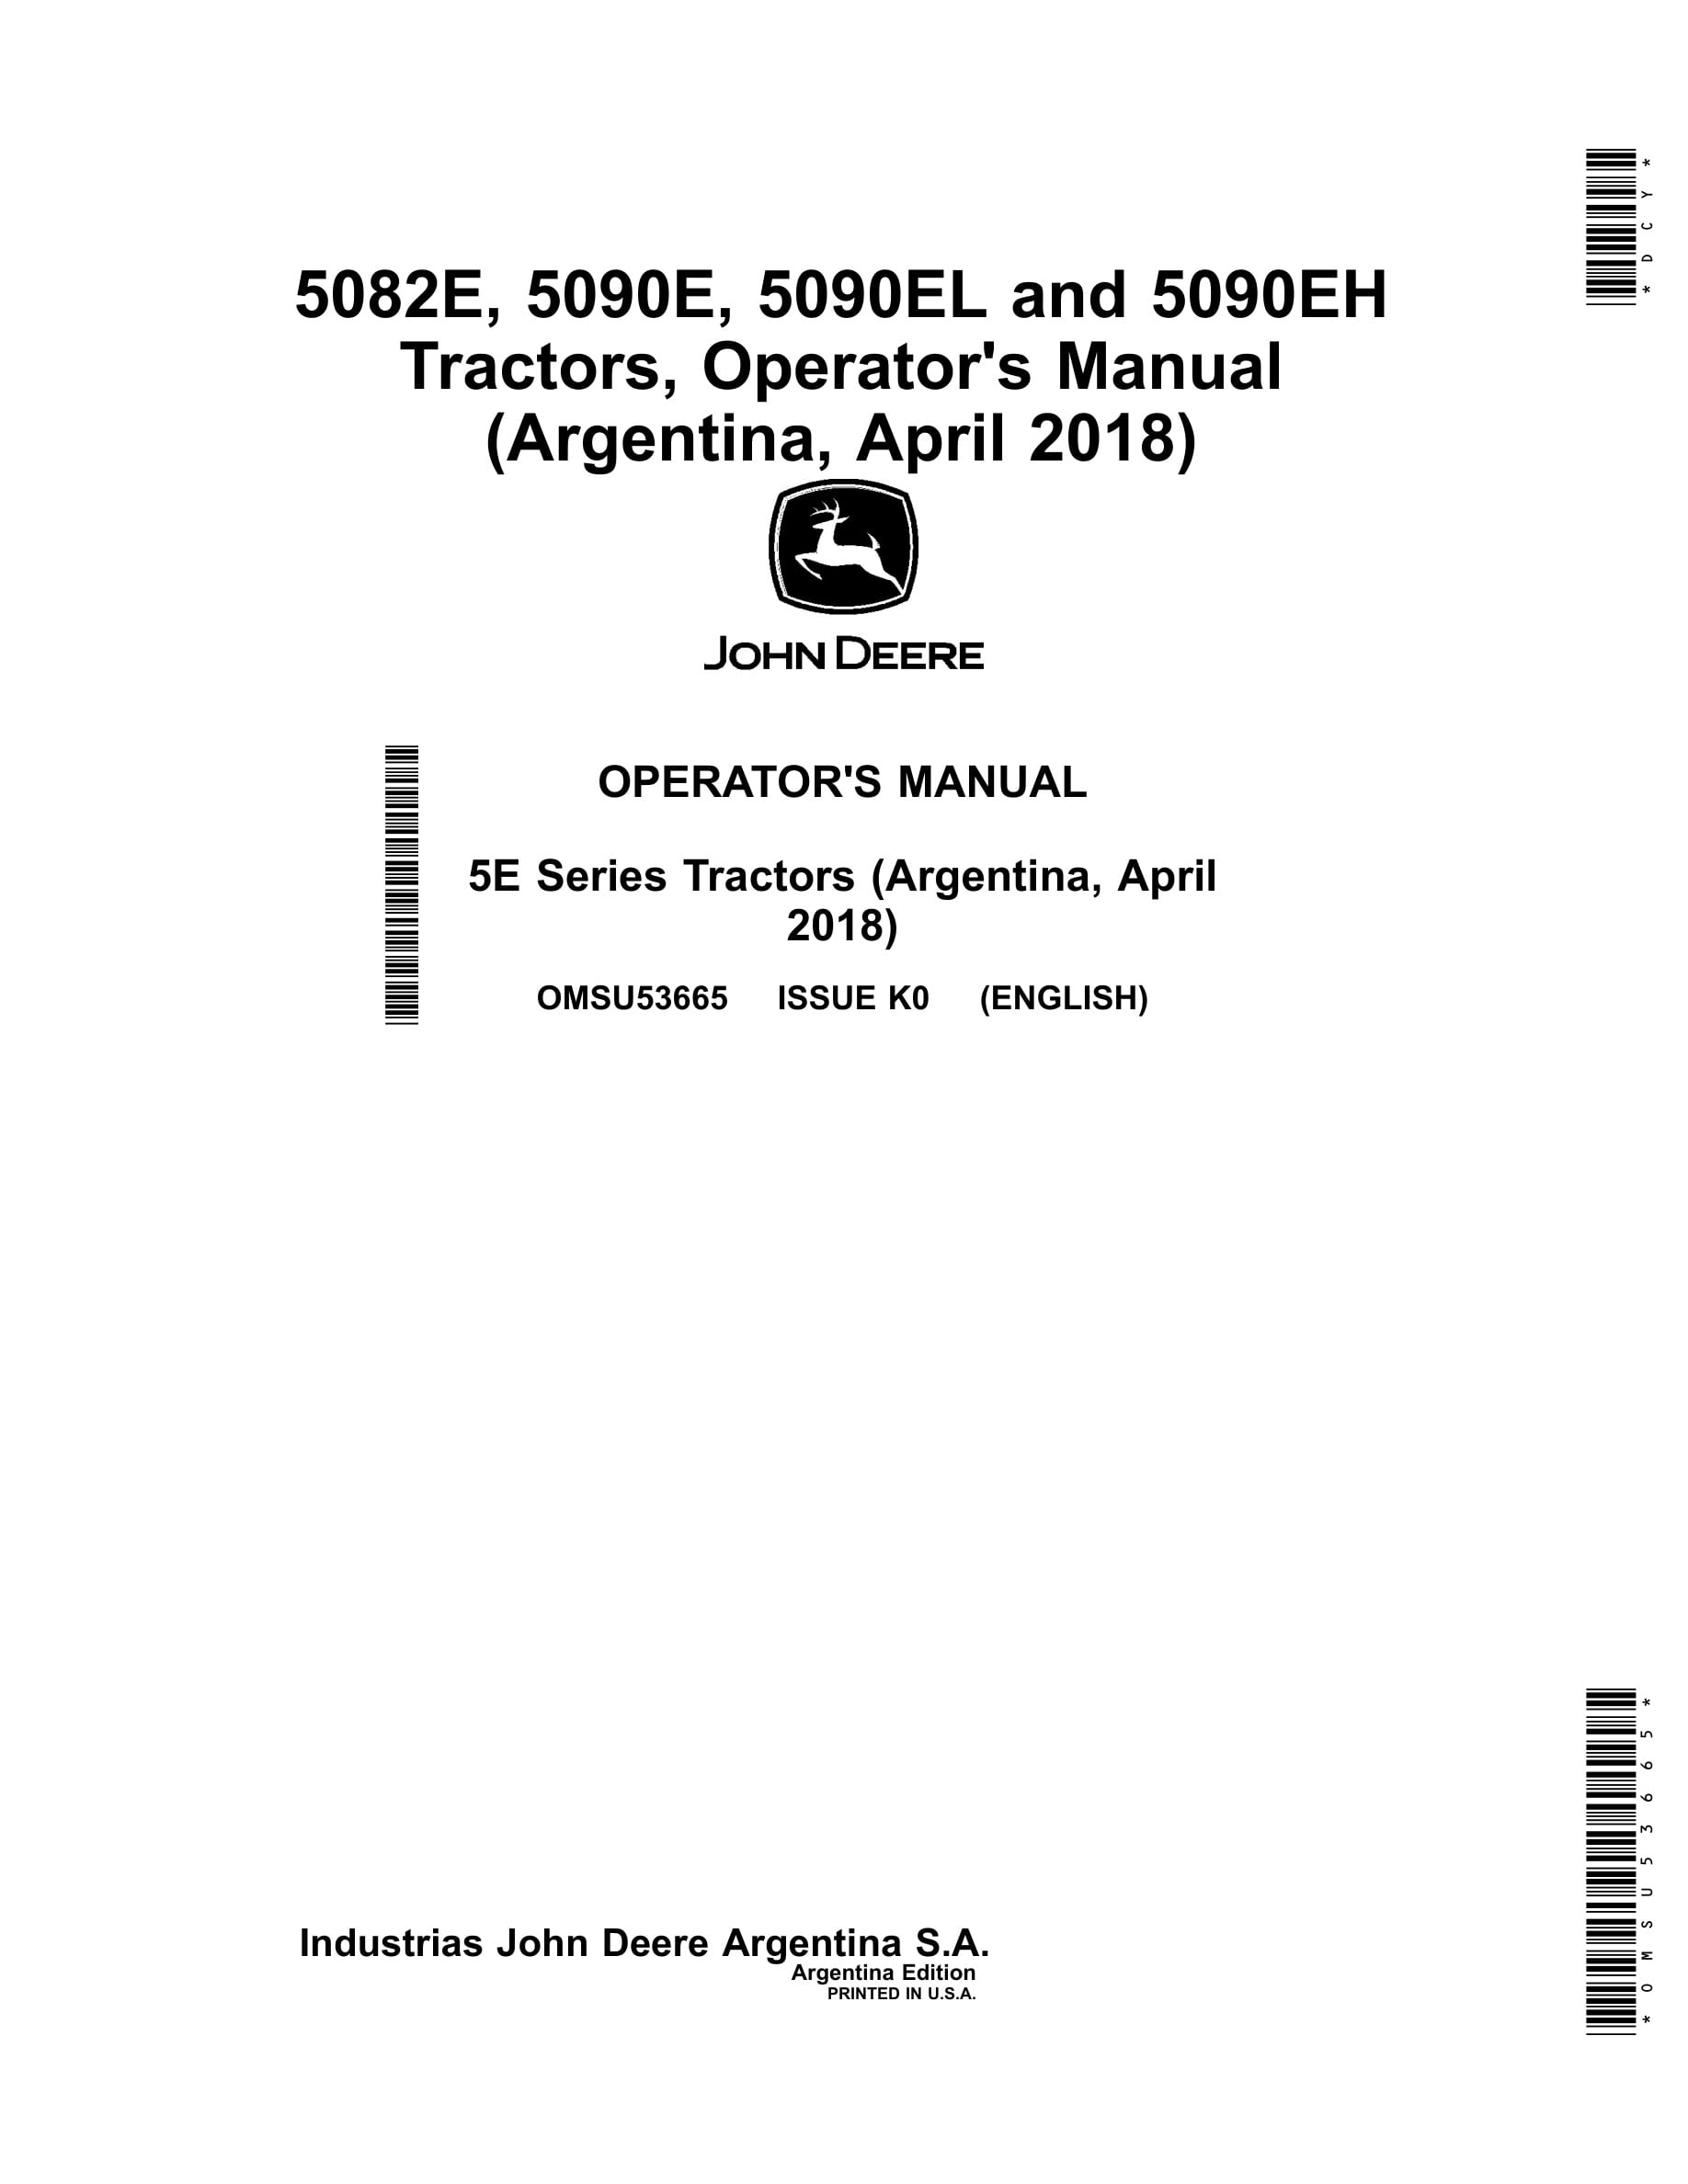 John Deere 5082e, 5090e, 5090el And 5090eh Tractors Operator Manuals OMSU53665-1